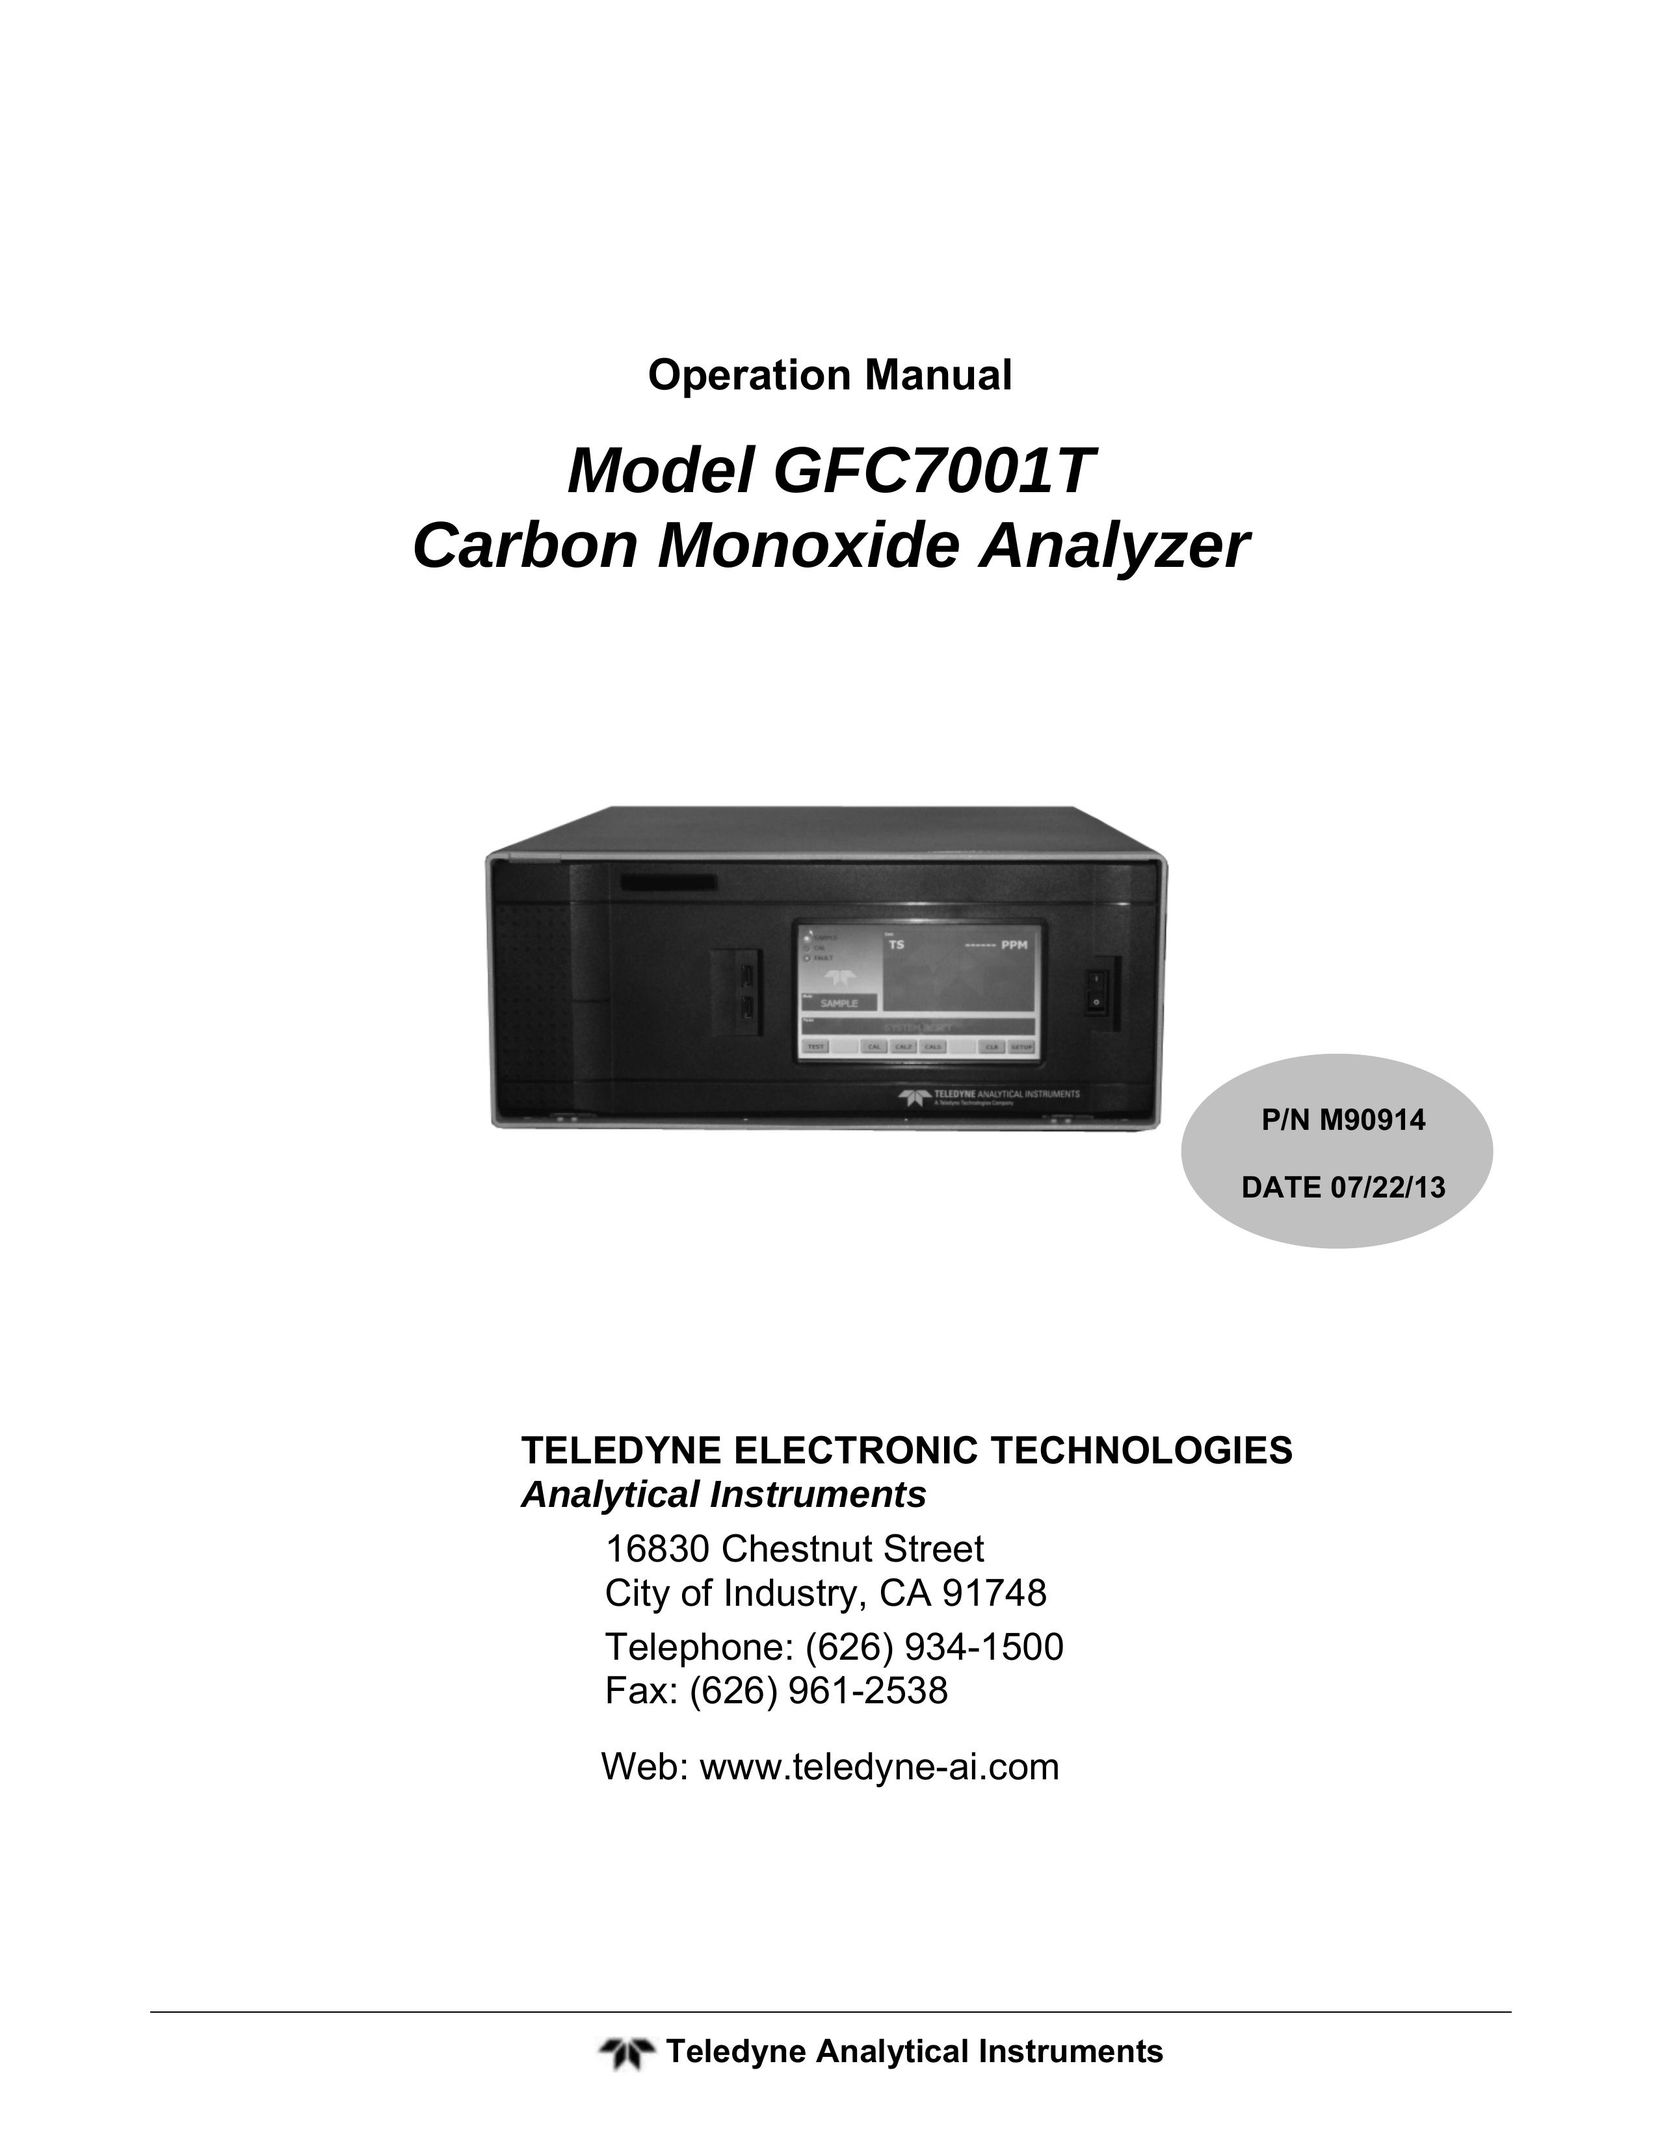 Teledyne GFC7001T Carbon Monoxide Alarm User Manual